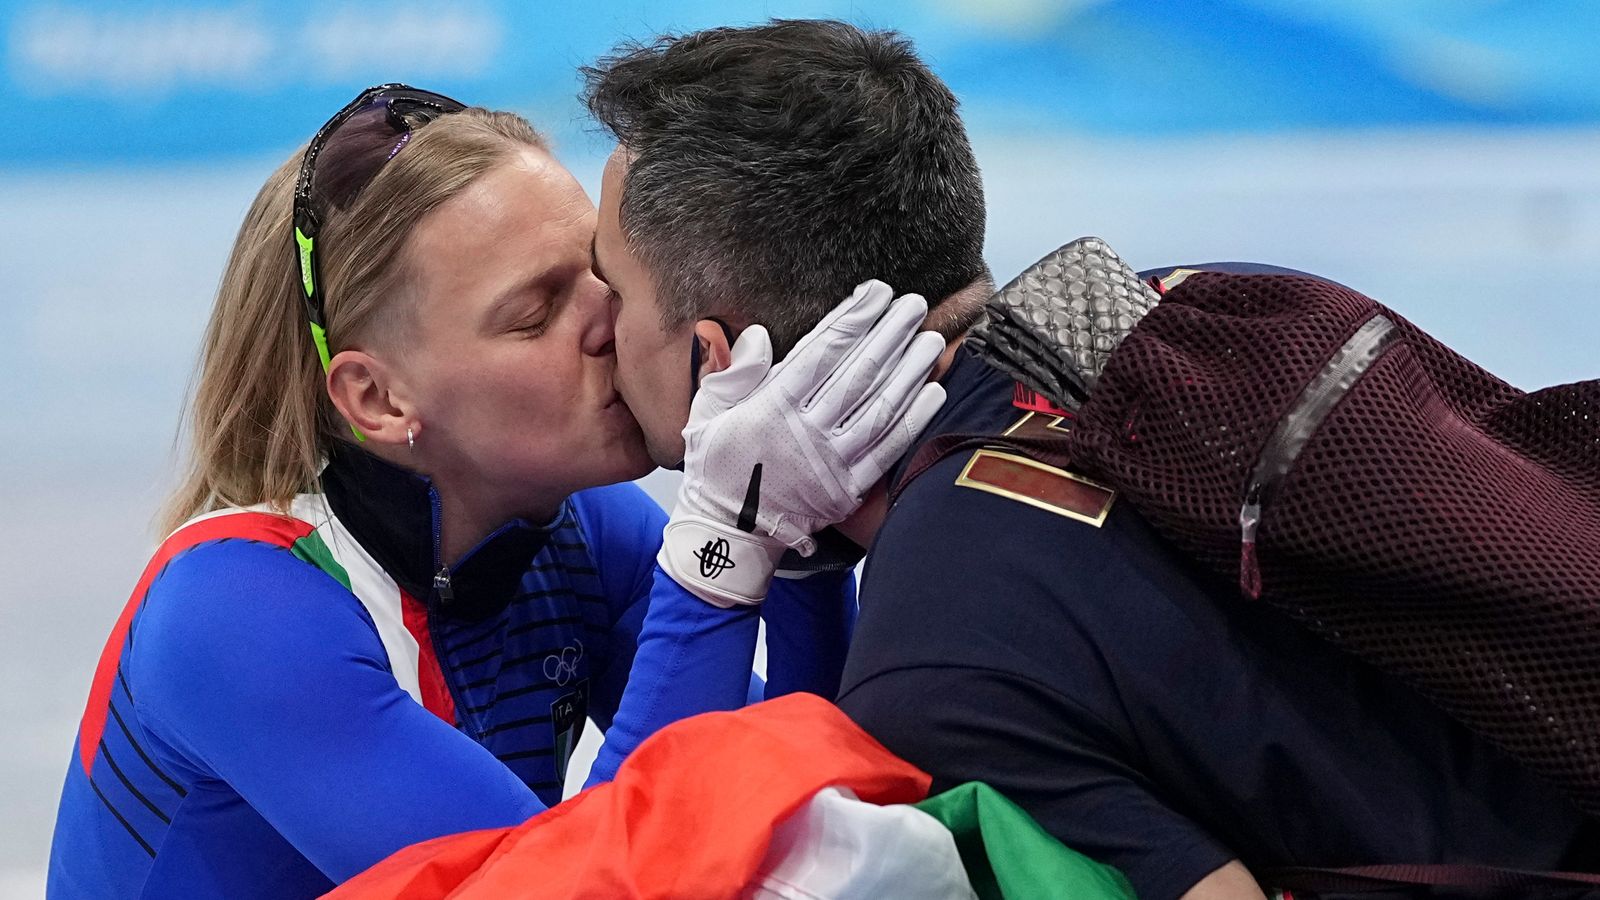 Notizie Olympia 2022: Arianna Fontana provoca associazione con il bacio |  Notizie olimpiche